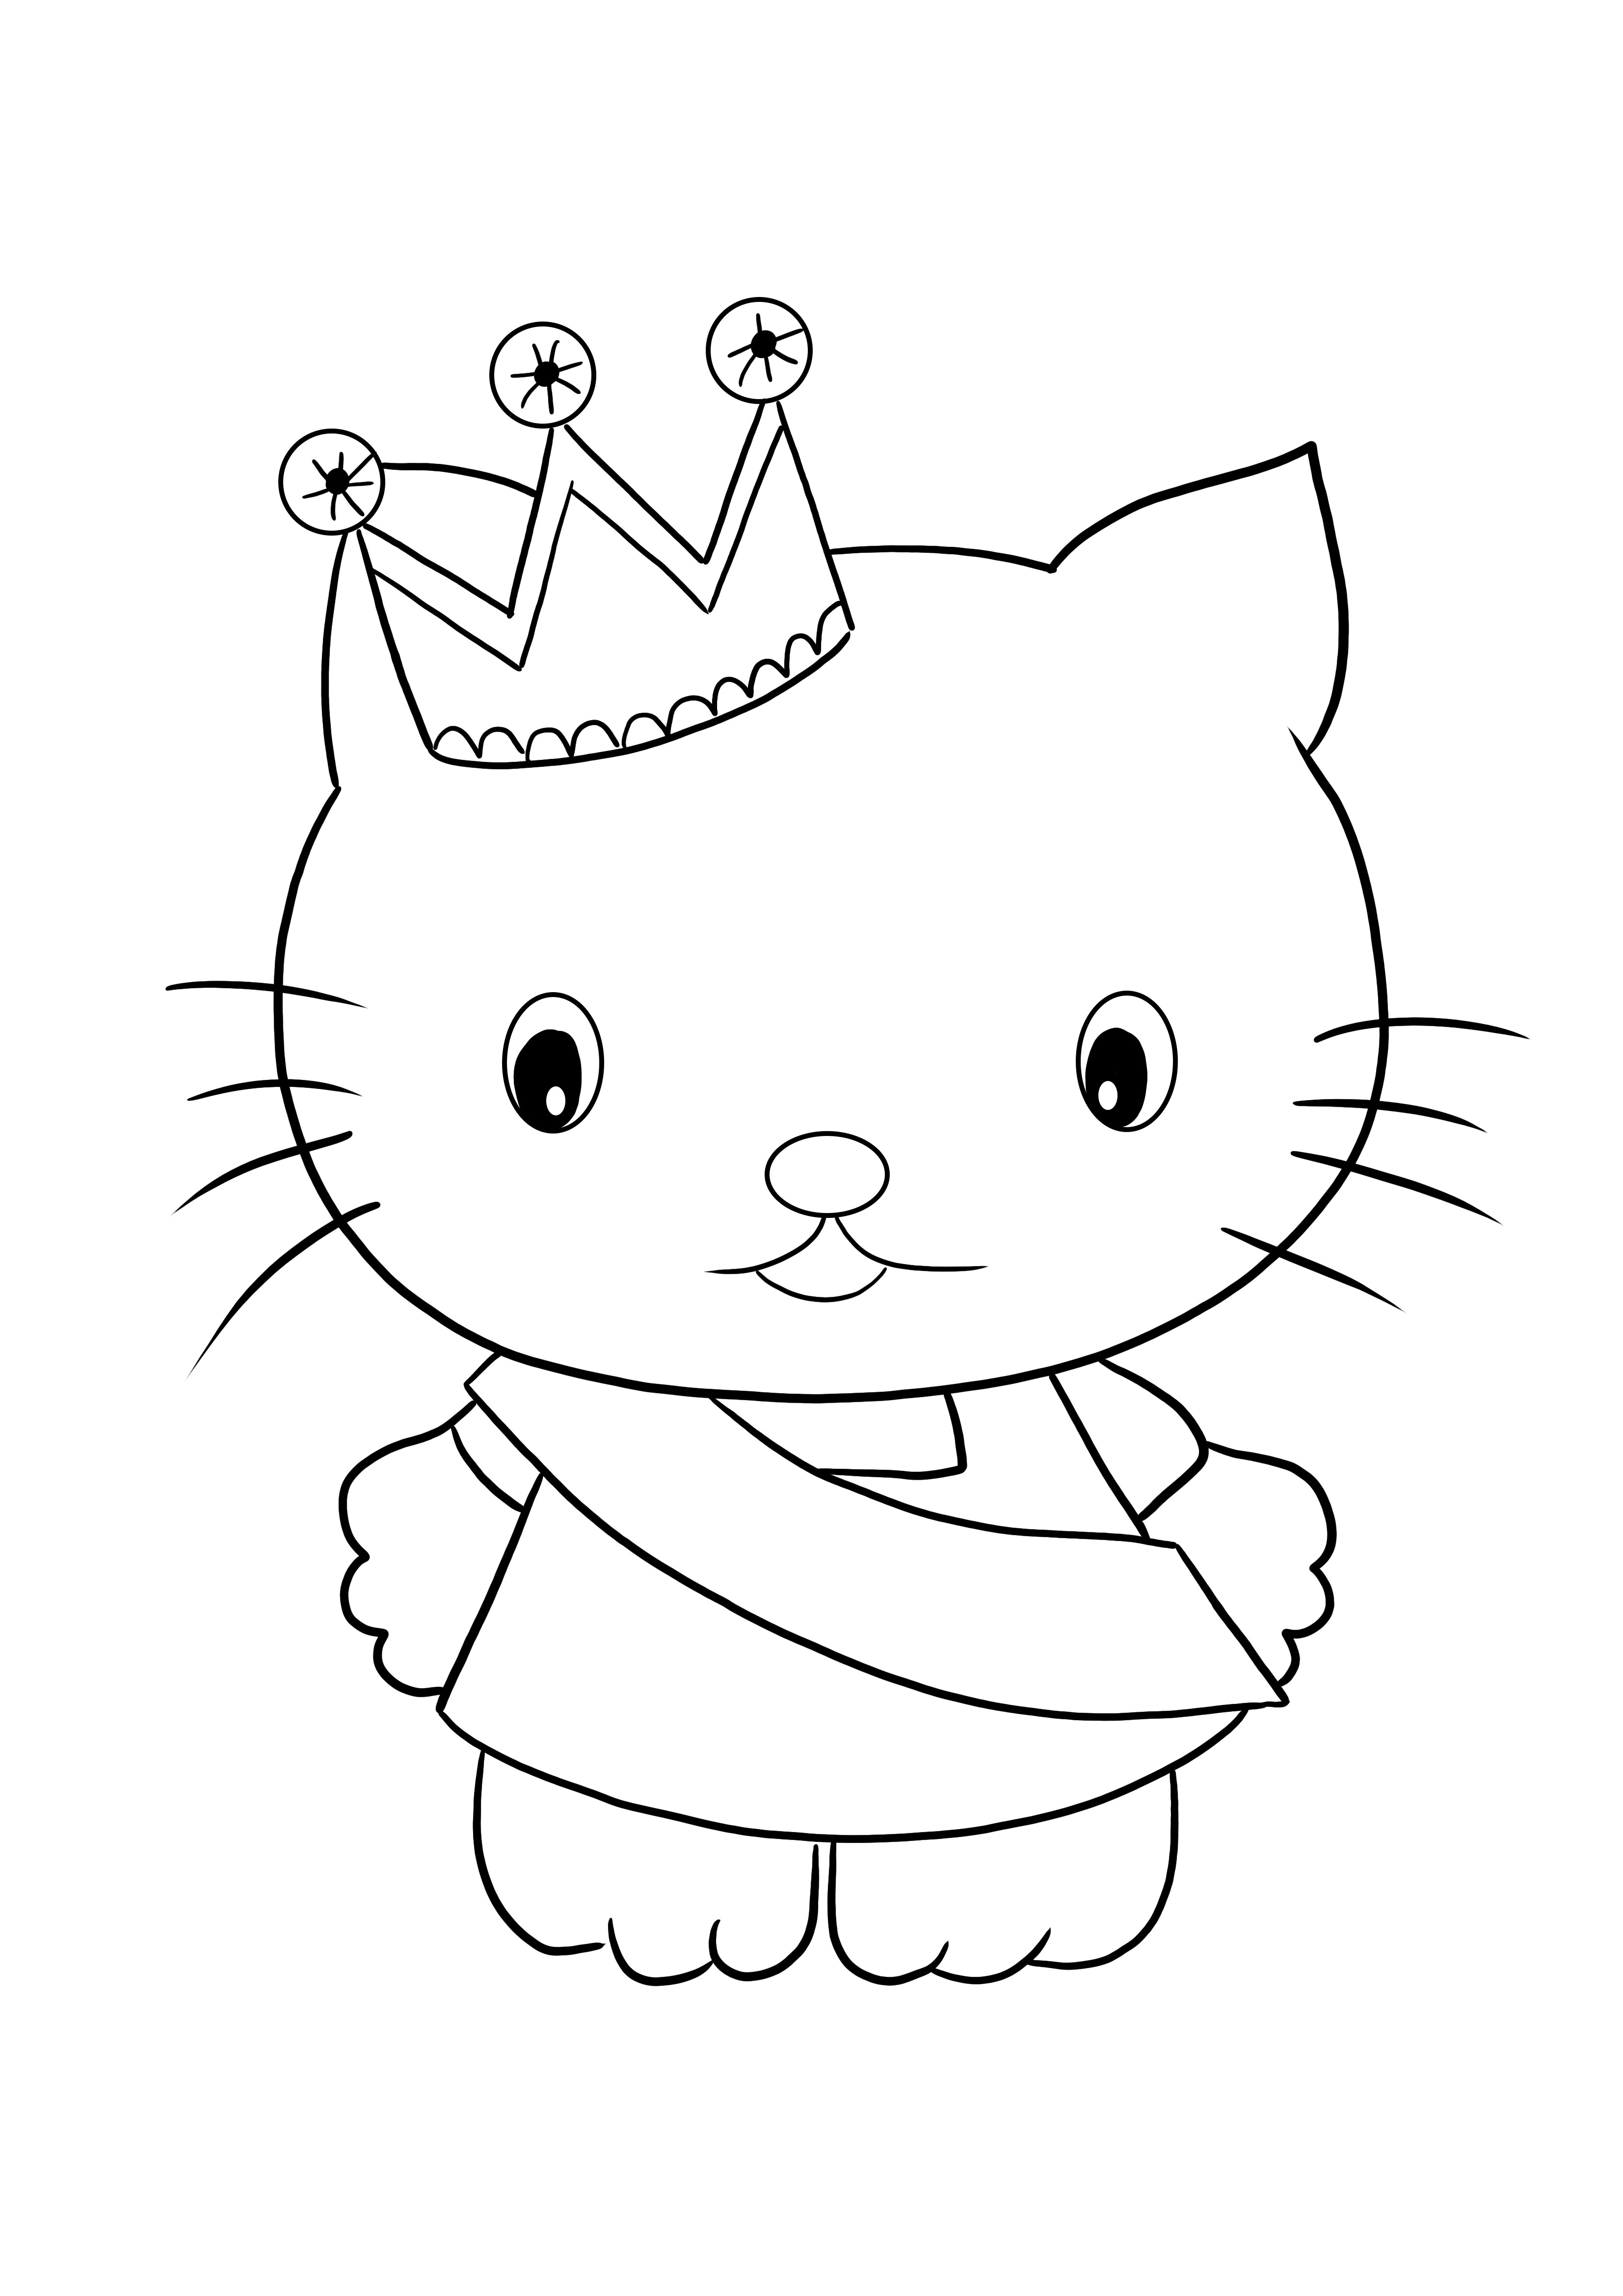 Stampa gratuita del foglio da colorare Hello Kitty Princess per colorare e divertirsi